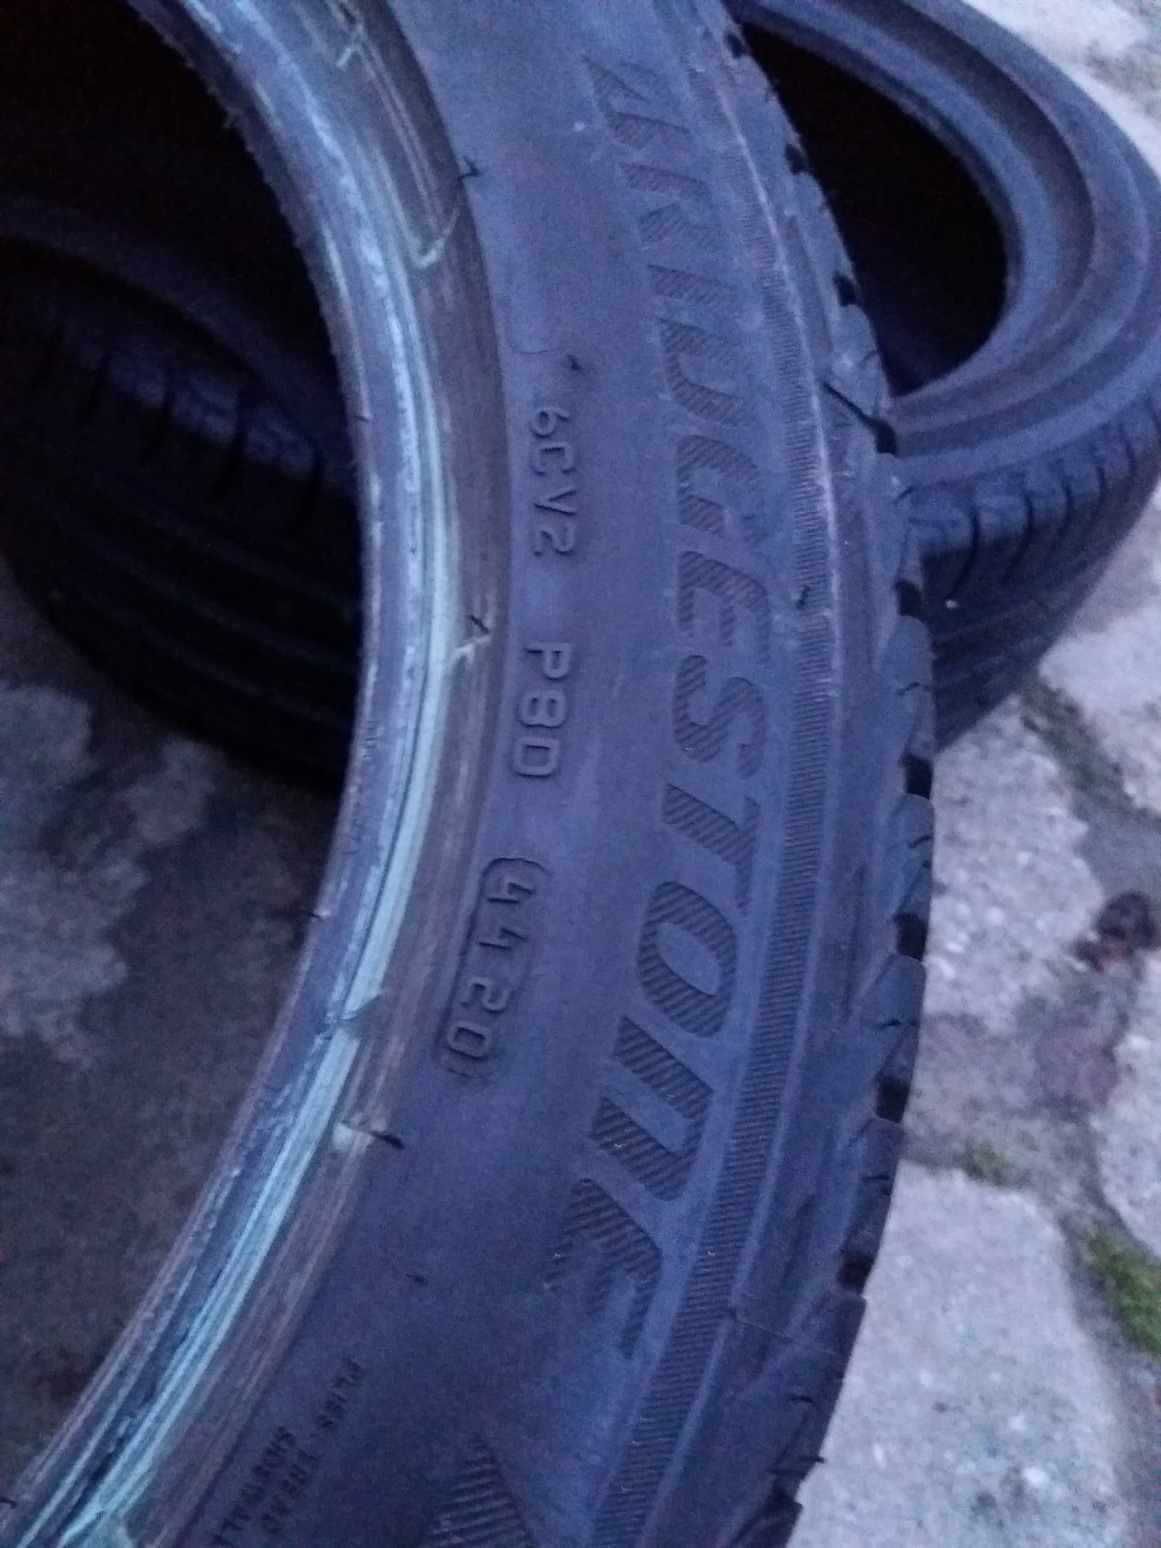 Opony LETNIE Bridgestone turanza 215/50/18 R18 2020r 7mm cena za 4 szt